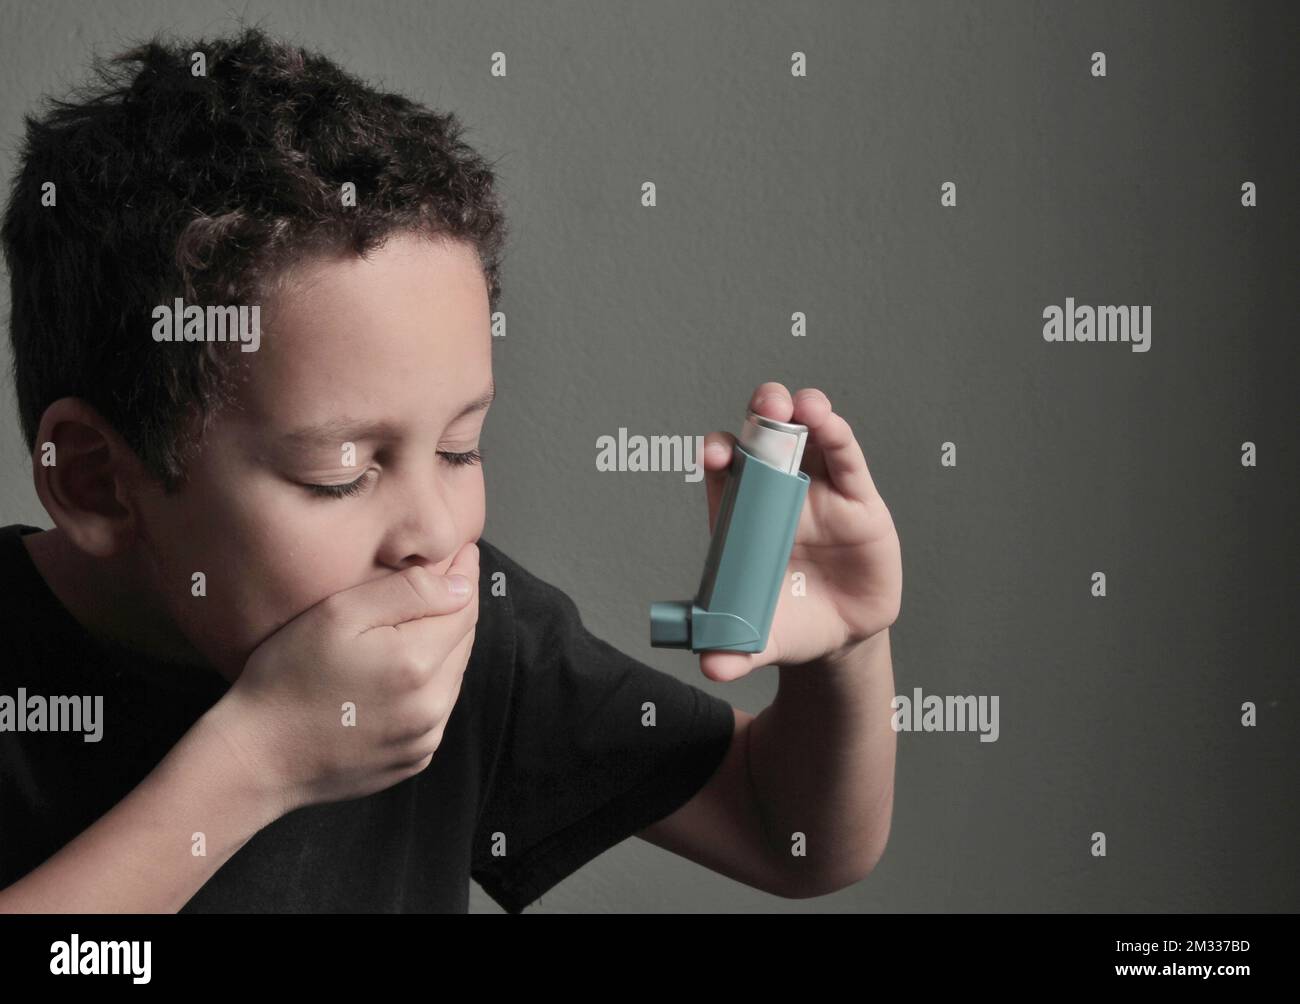 enfant avec la grippe et l'inhalateur souffle sur fond gris avec photo de stock de personnes Banque D'Images